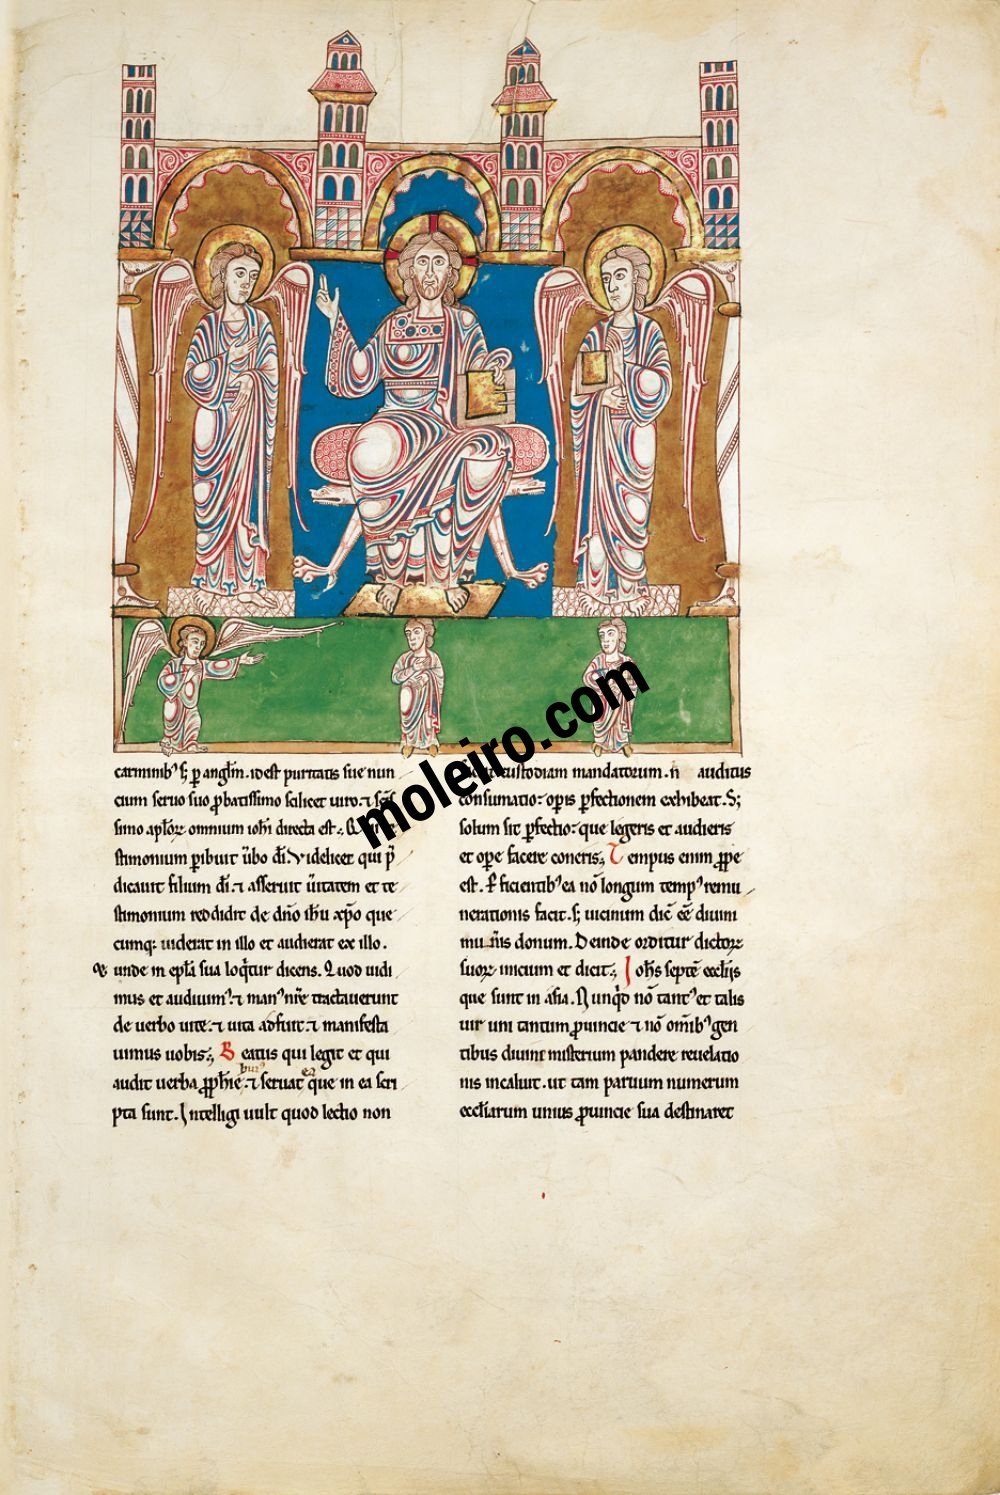 Beatus von Cardeña f. 3A, Gott übergibt das Buch an den Engel und dieser händigt es Johannes aus